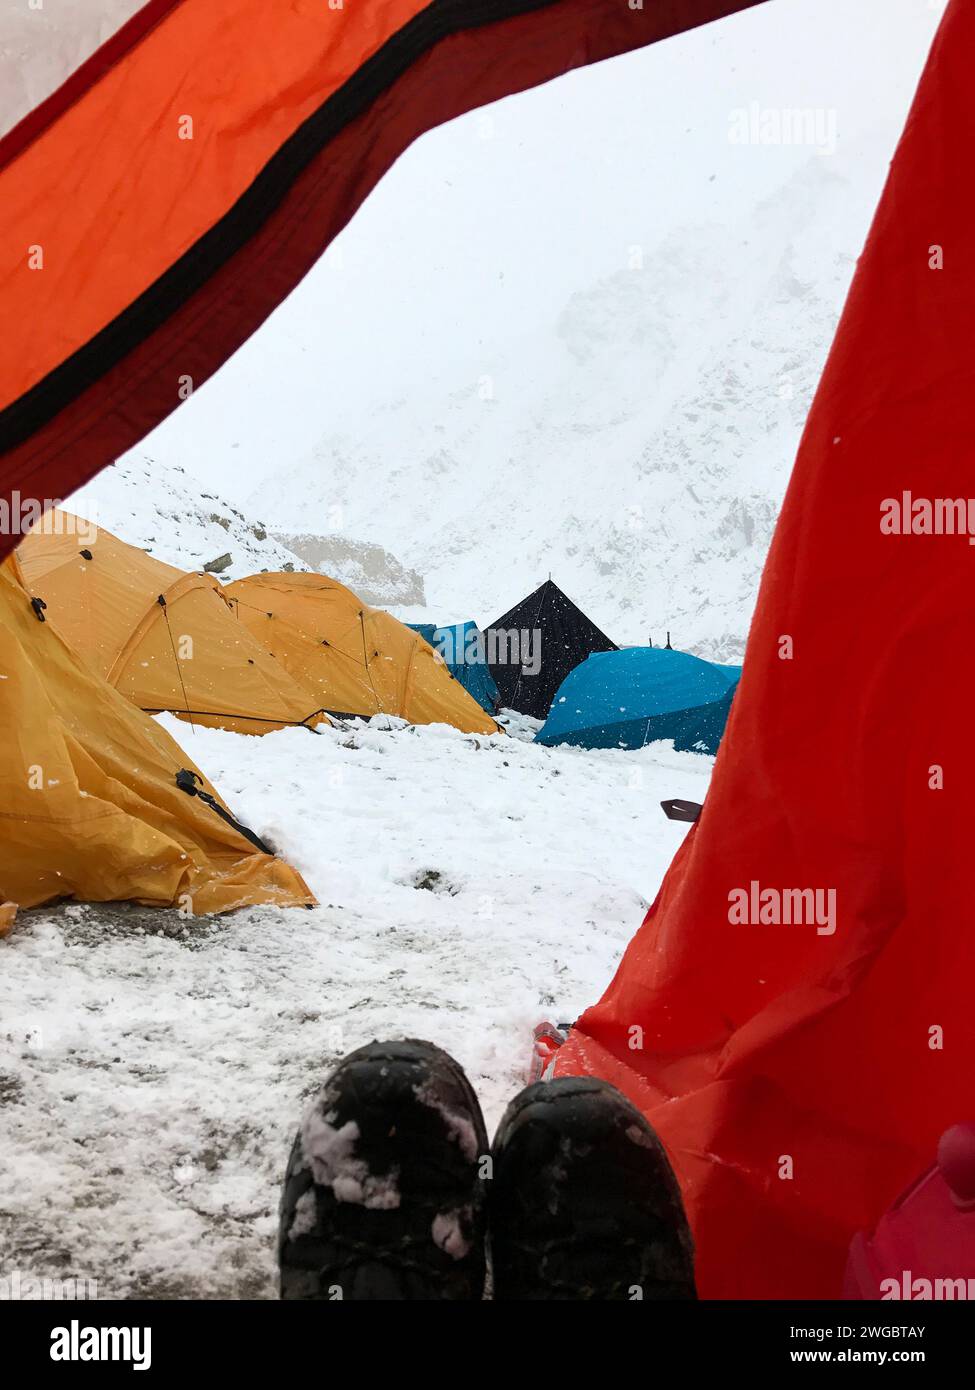 Femme dans une expédition d'alpinisme assise dans une tente, Himalaya indien, Inde Banque D'Images